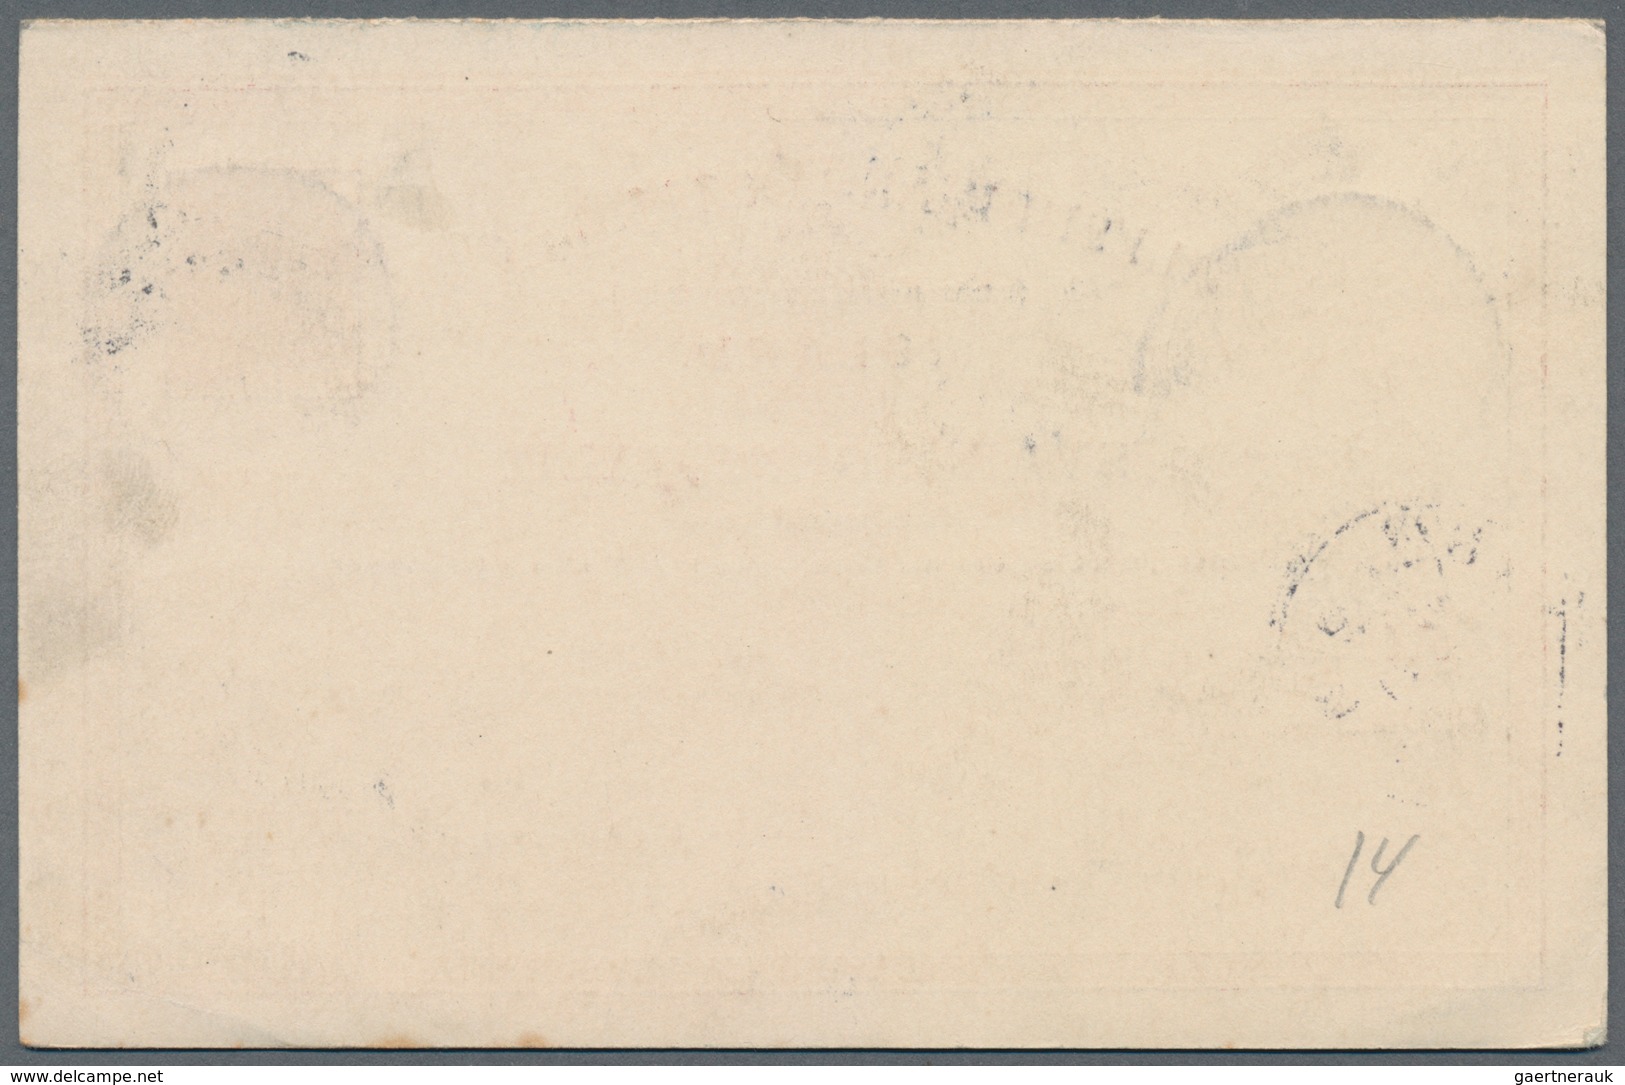 Island - Ganzsachen: 1890, 10 Aur Double Stationery Cards In Type "I" And "II" Sent Fron REYKJAVIK 1 - Ganzsachen